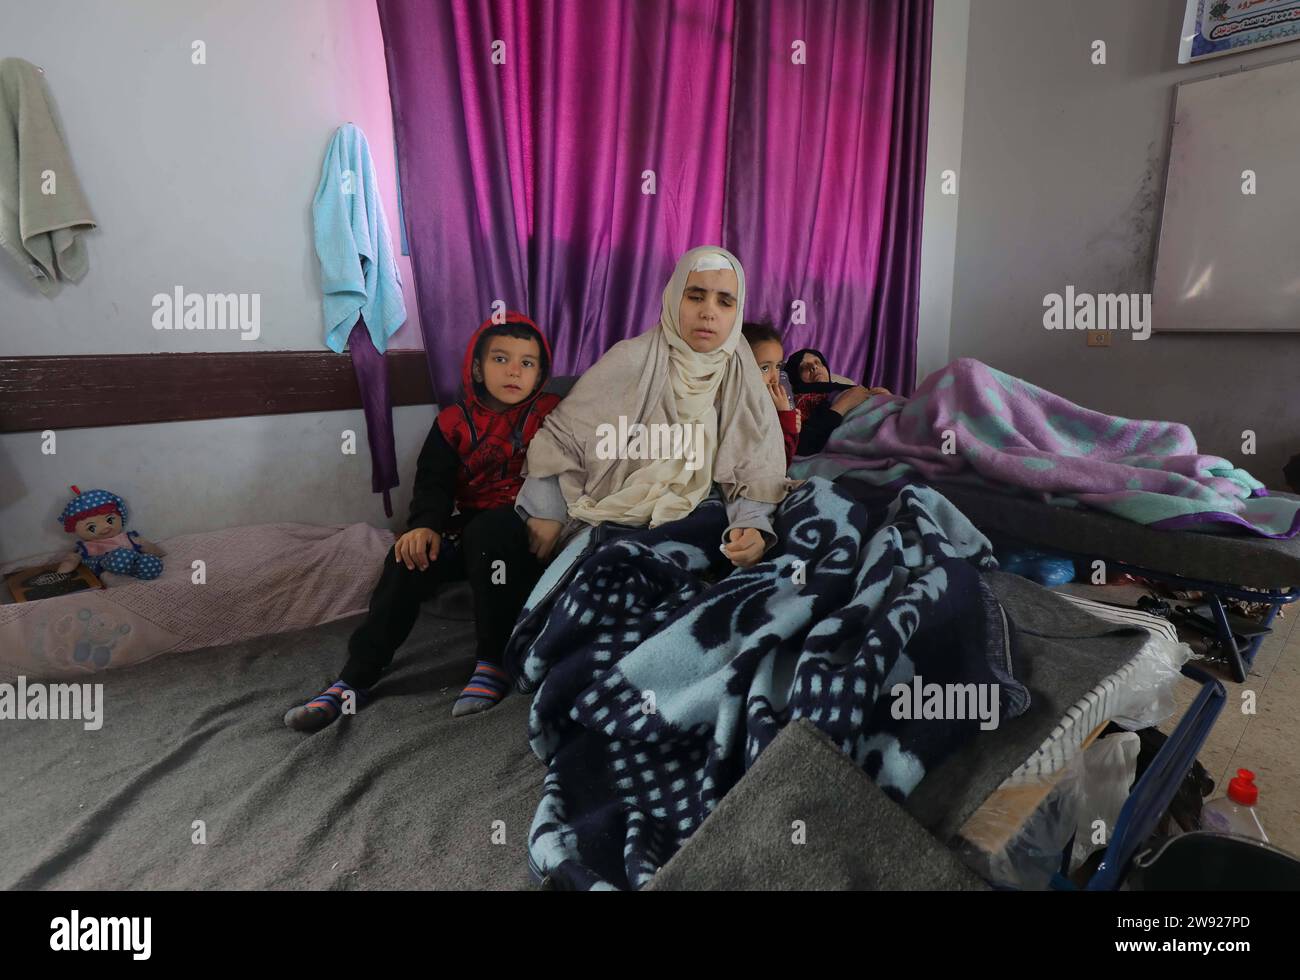 L’enseignante palestinienne Rahma Abu Safi, 30 ans, est soignée dans un hôpital de campagne installé dans l’école Khadija l’enseignante palestinienne Rahma Abu Safi, 30 ans, est soignée dans un hôpital de campagne installé dans l’école Khadija, à l’ouest de la ville de Deir al-Balah, le 23 décembre 2023. Abu Safi travaille comme professeur d'anglais, et elle a été aveuglée après avoir été blessée lors du bombardement de la maison de sa famille par les armes israéliennes dans le quartier de Tal al al-Hawa, au sud de la ville de Gaza, il y a environ un mois. Photo Omar Ashtawy apaimages Dair El-Balah bande de Gaza territoire palestinien 231223 Dair El-Balah OSH 2 002 Copyright : xa Banque D'Images